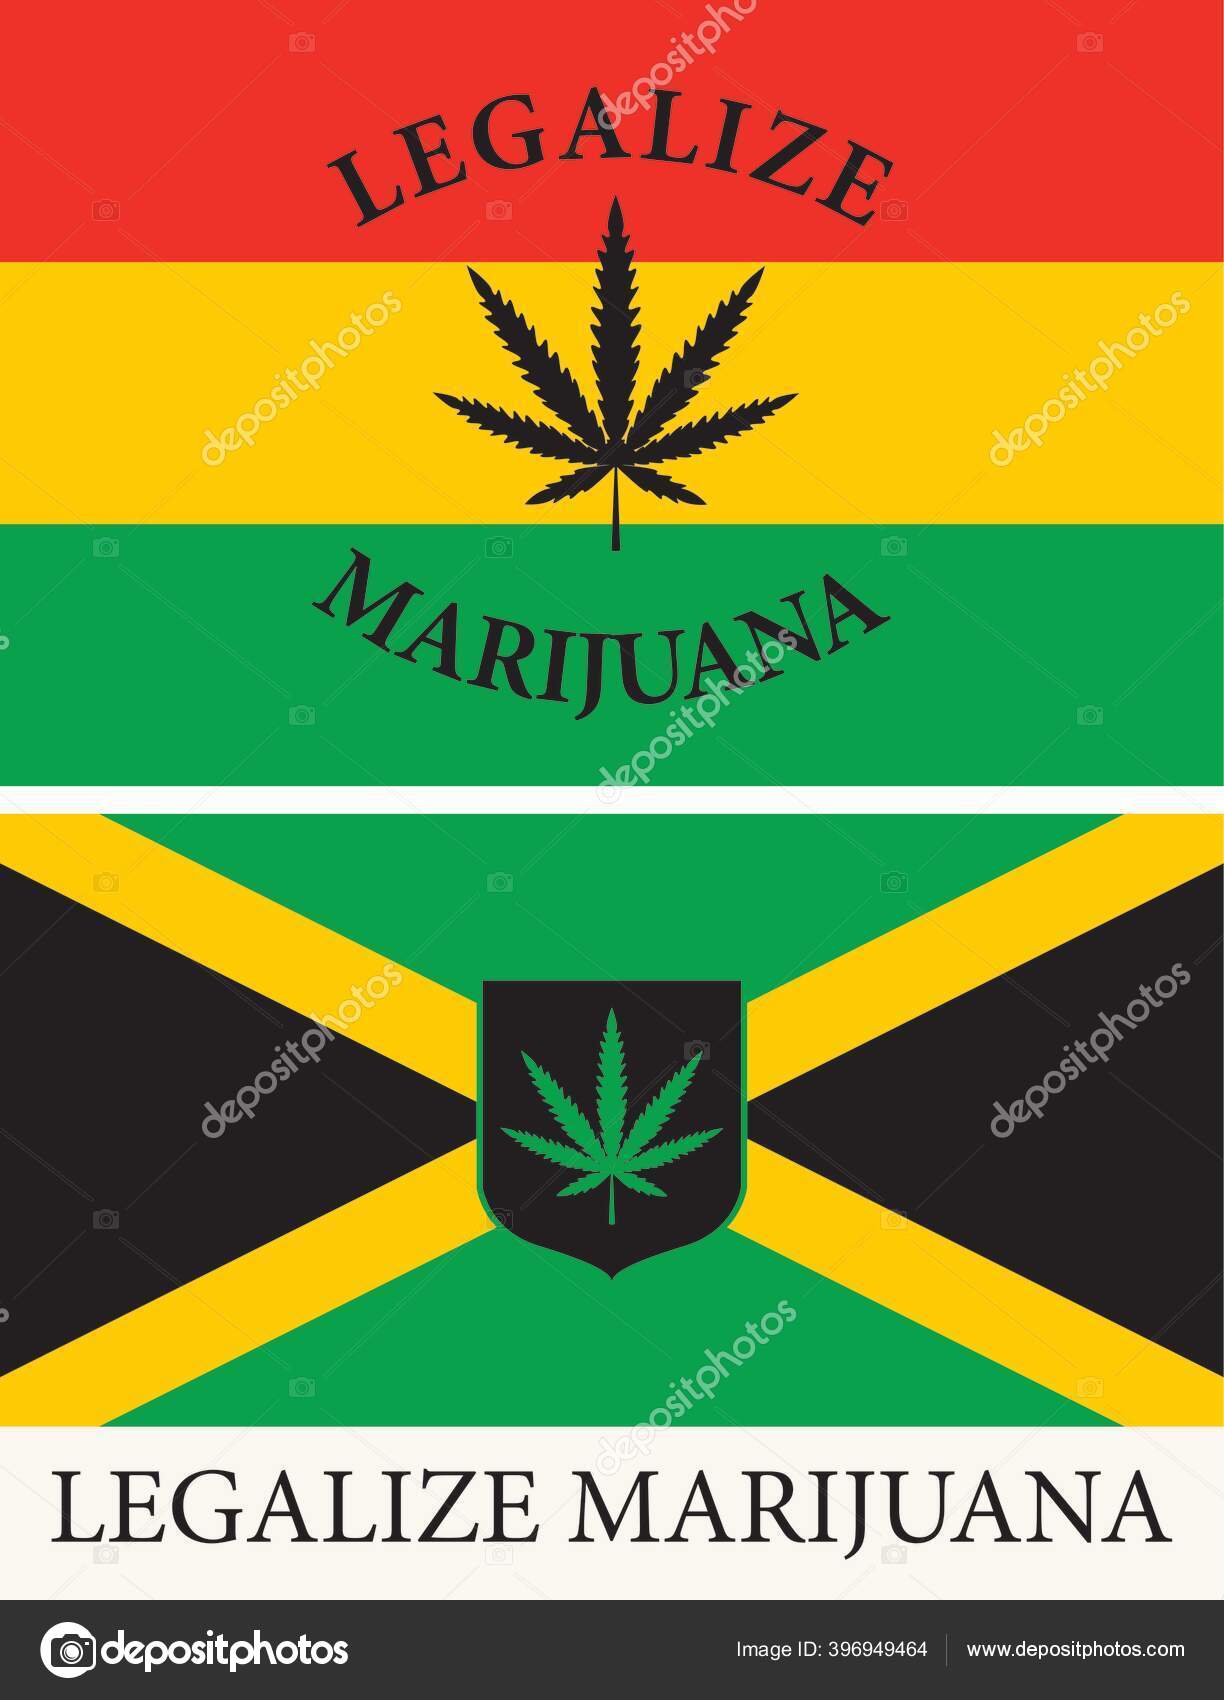 ジャマイカ国旗とラスタファリアン旗の形をした旗 マリファナを合法化し ジャマイカで大麻を合法化するという概念 薬物使用と差別化 雑草の喫煙 ストックベクター C Paseven